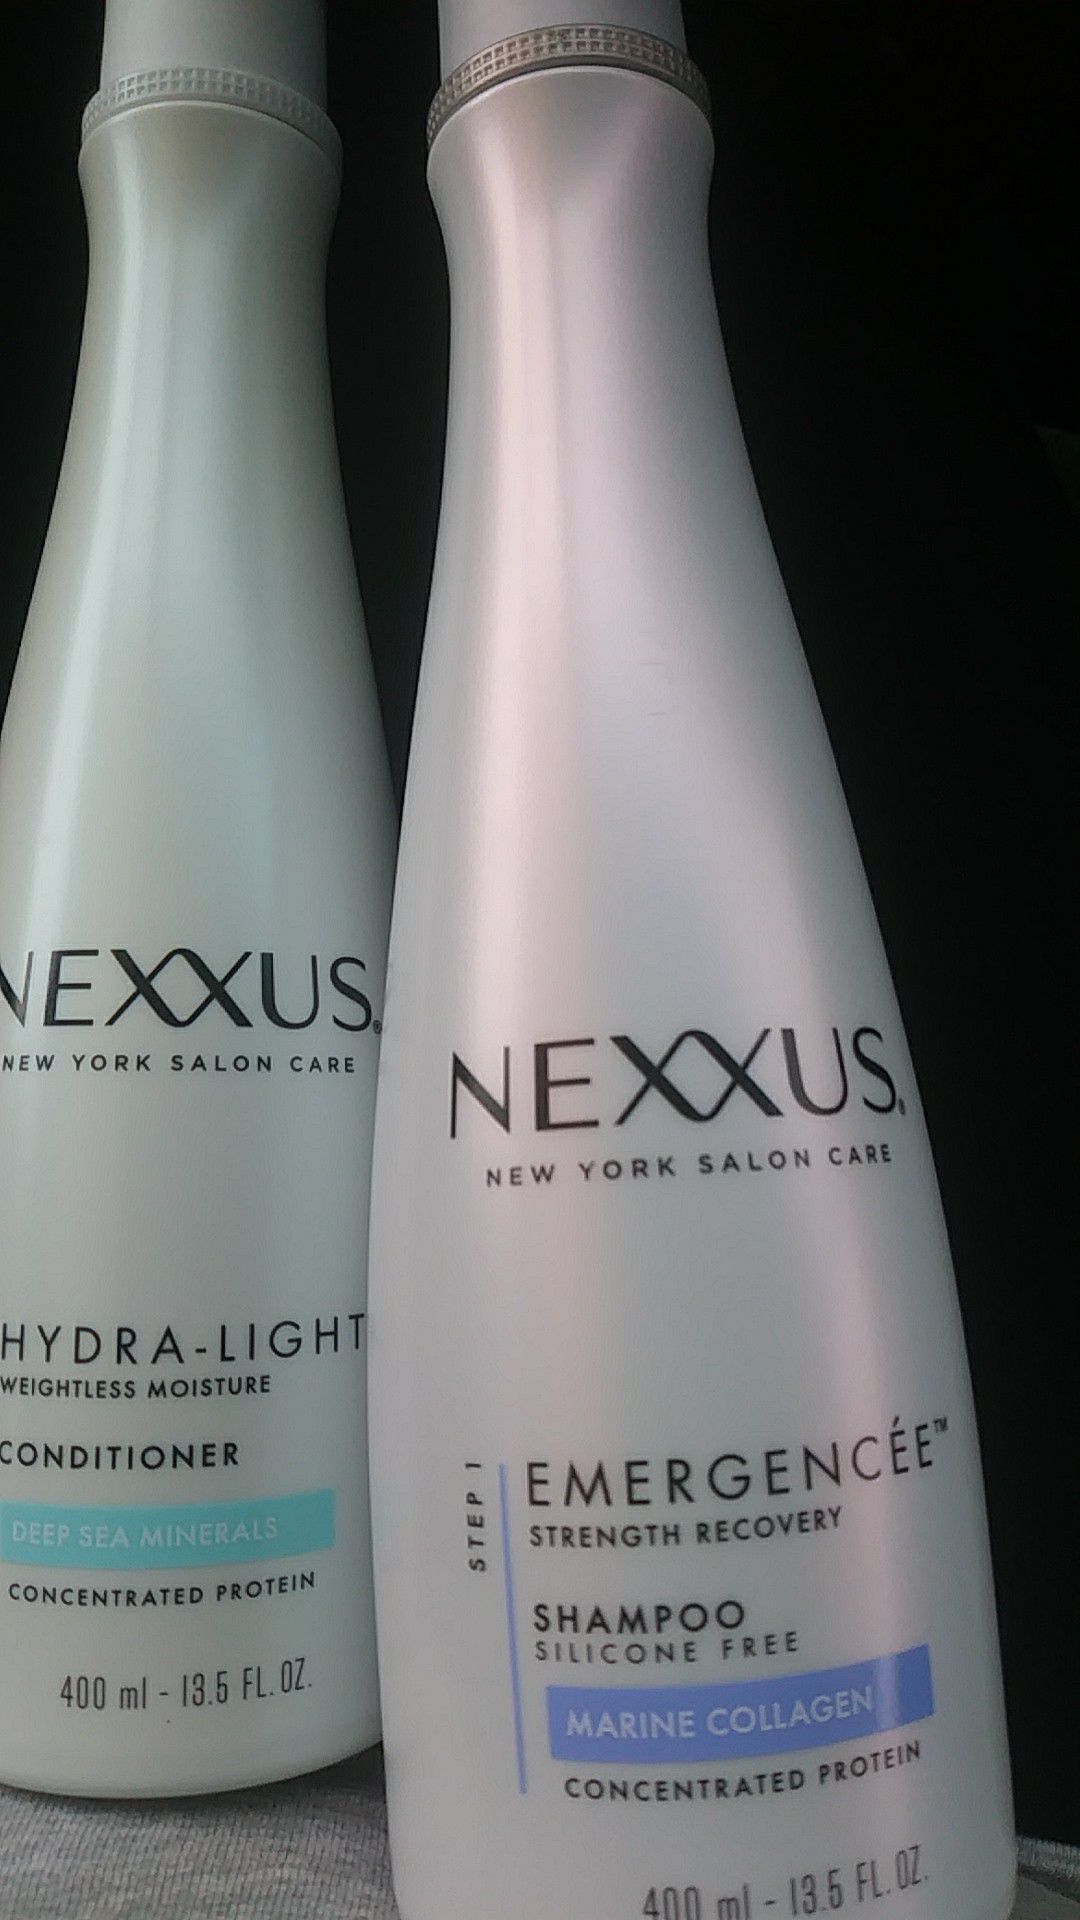 Brand new Nexxus shampoo & conditioner